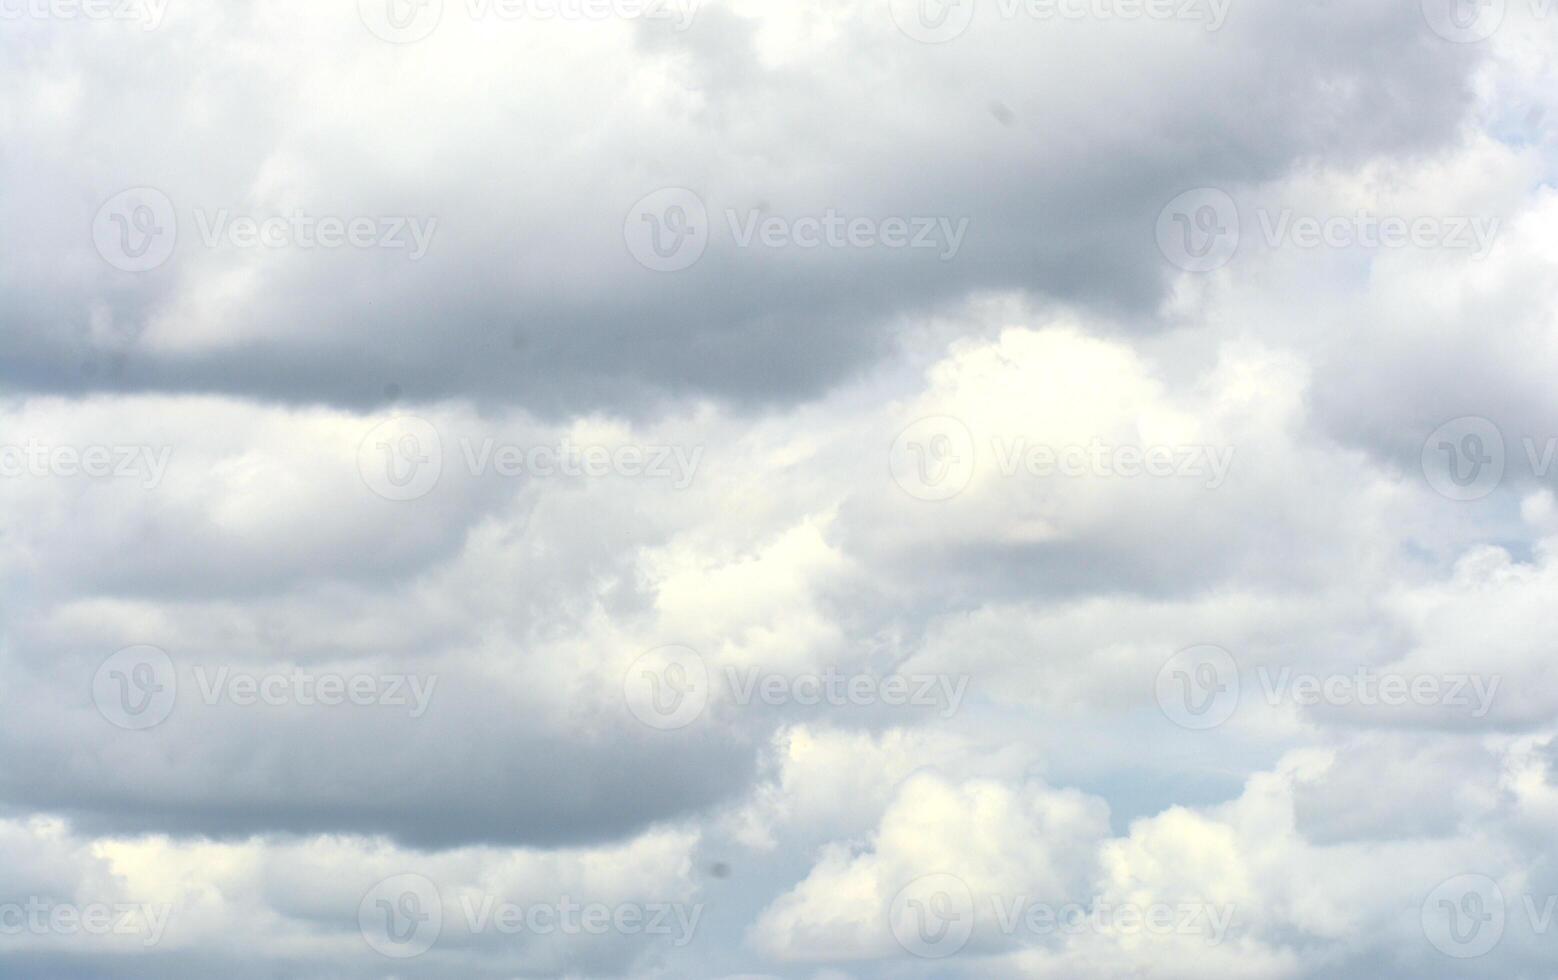 foto de ondulado blanco cielo antecedentes